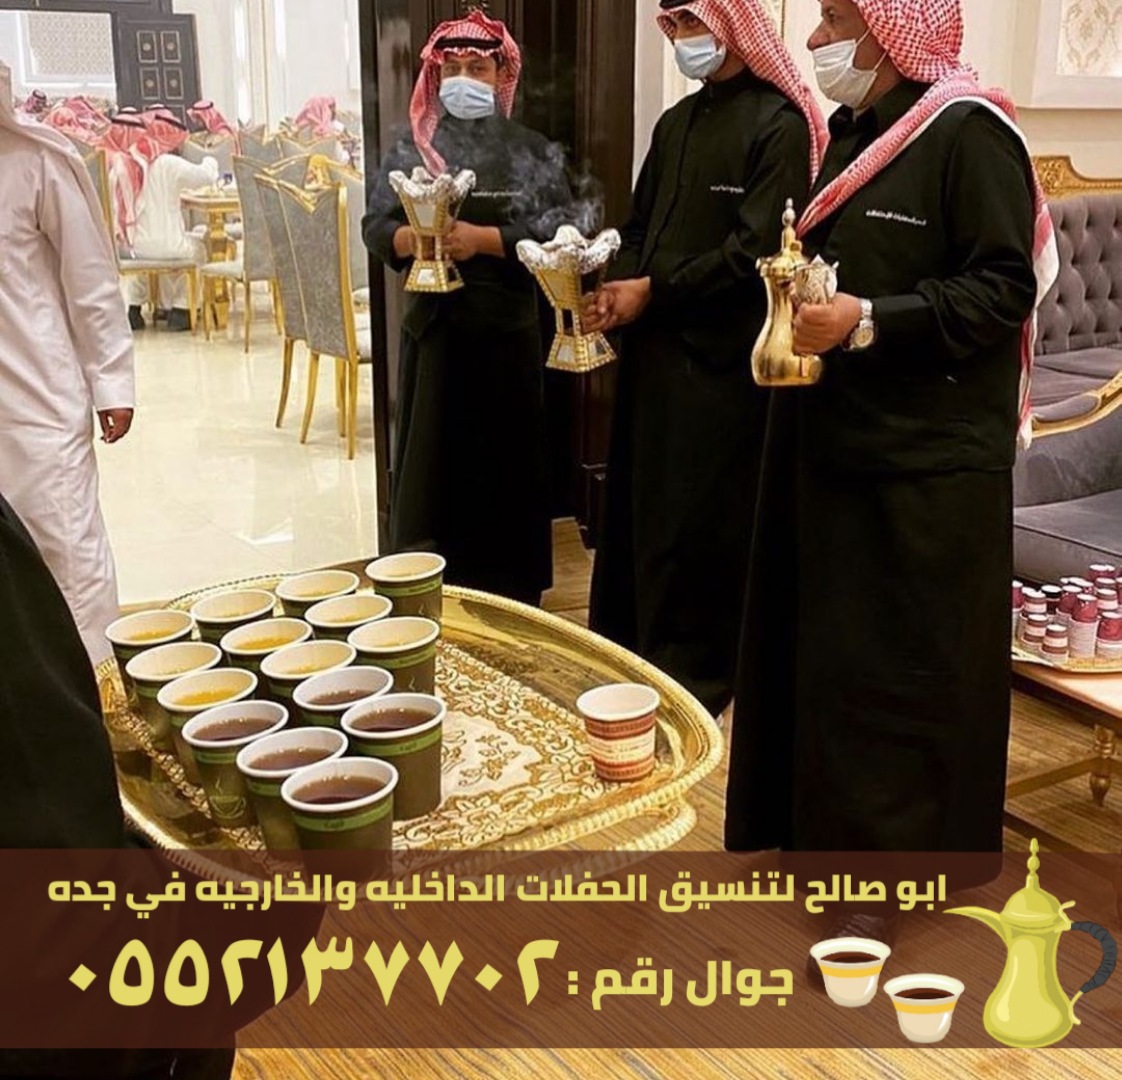 مباشرين قهوة و قهوجيين في جدة, 0552137702 P_263698l2r6